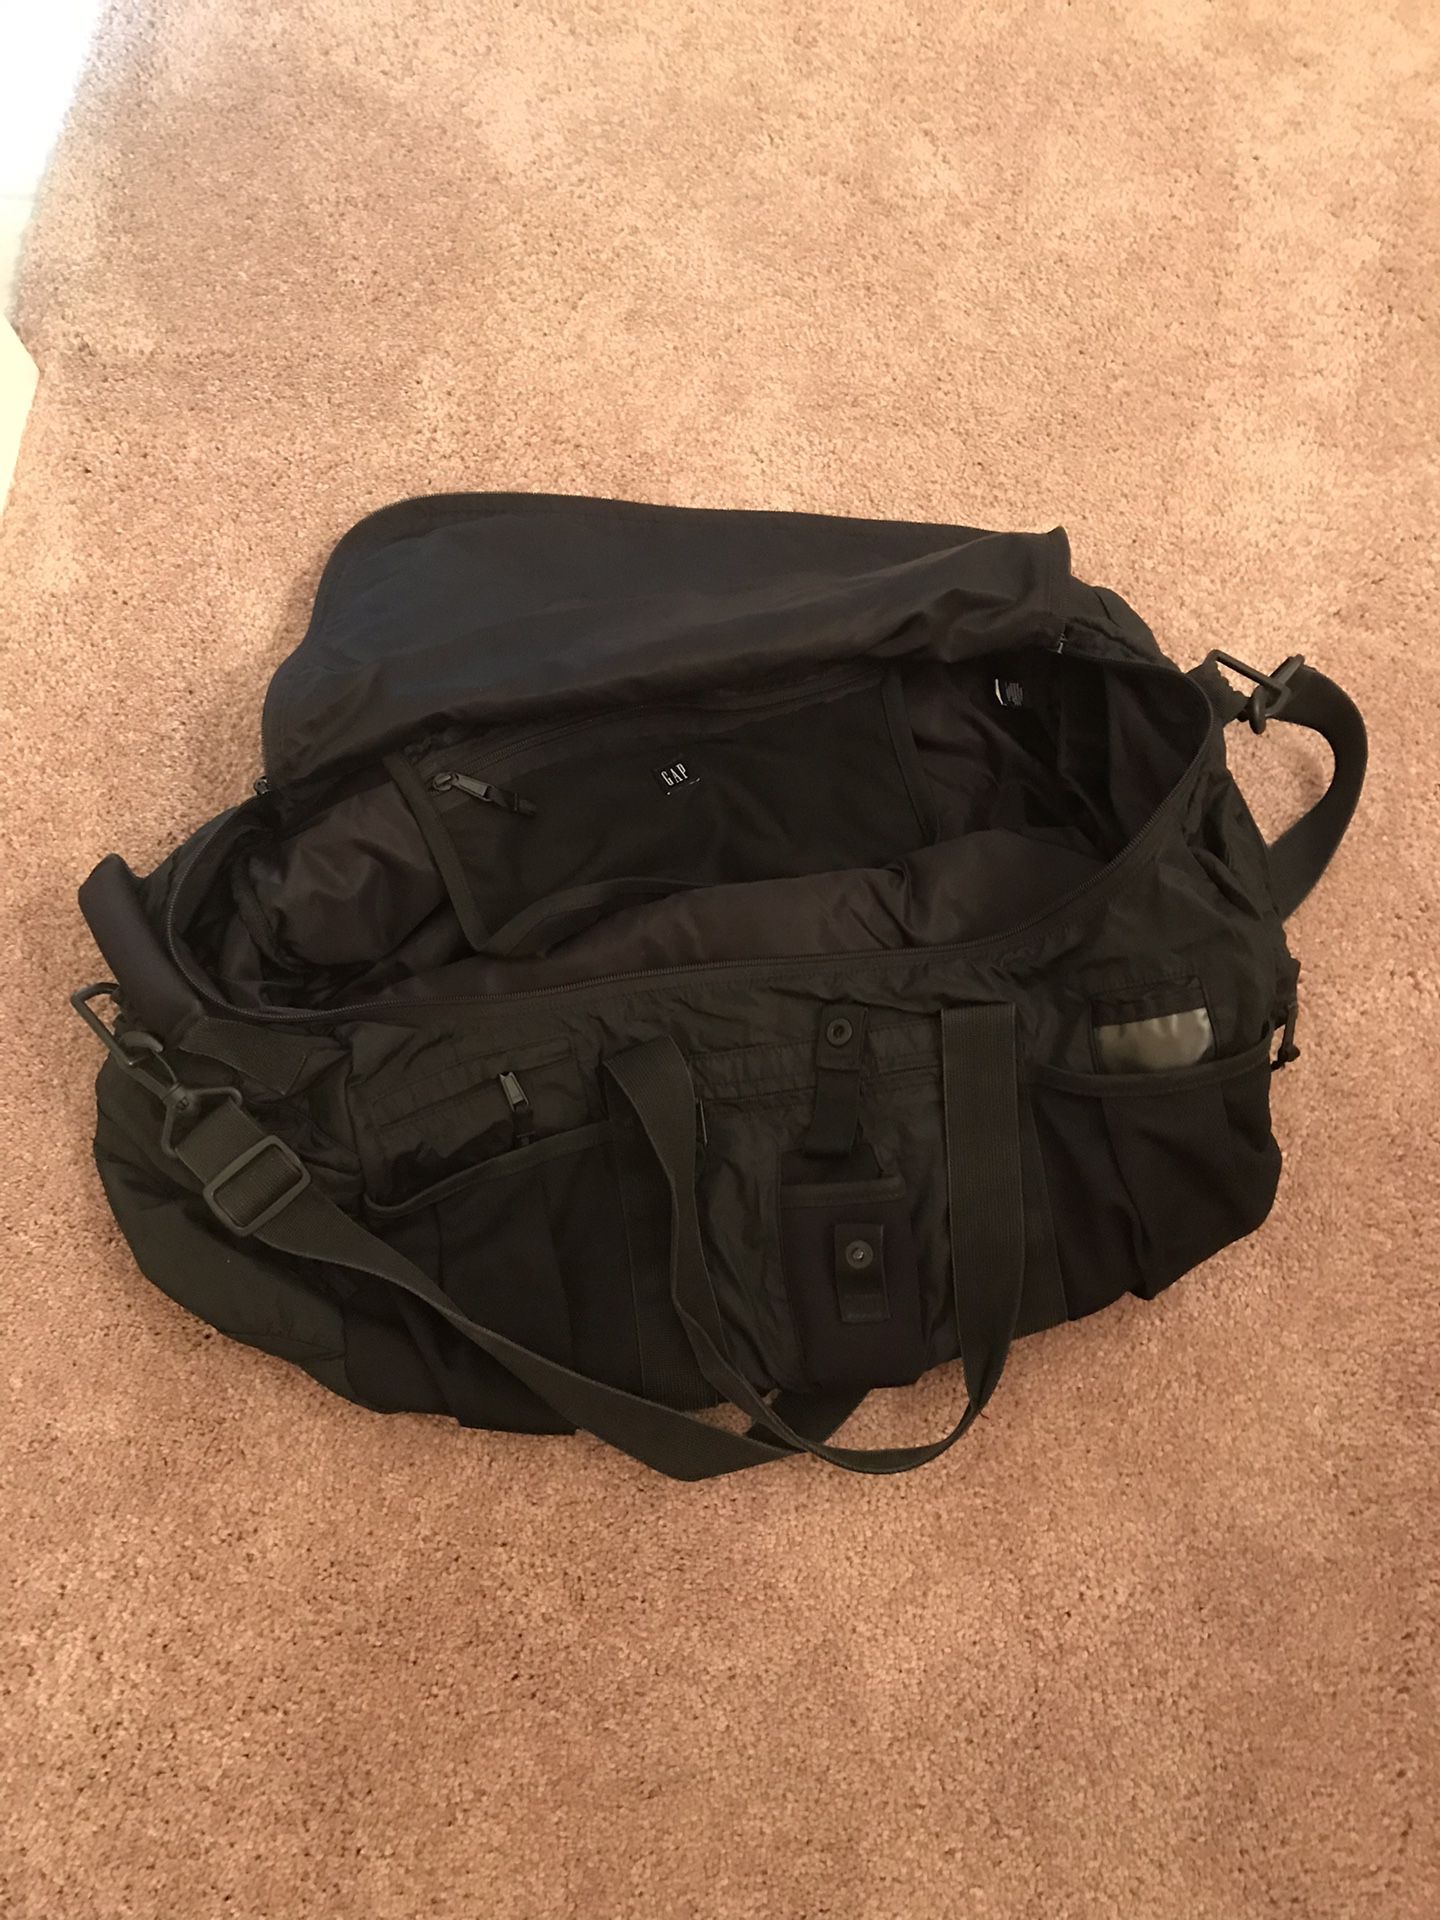 Large black Gap duffle bag